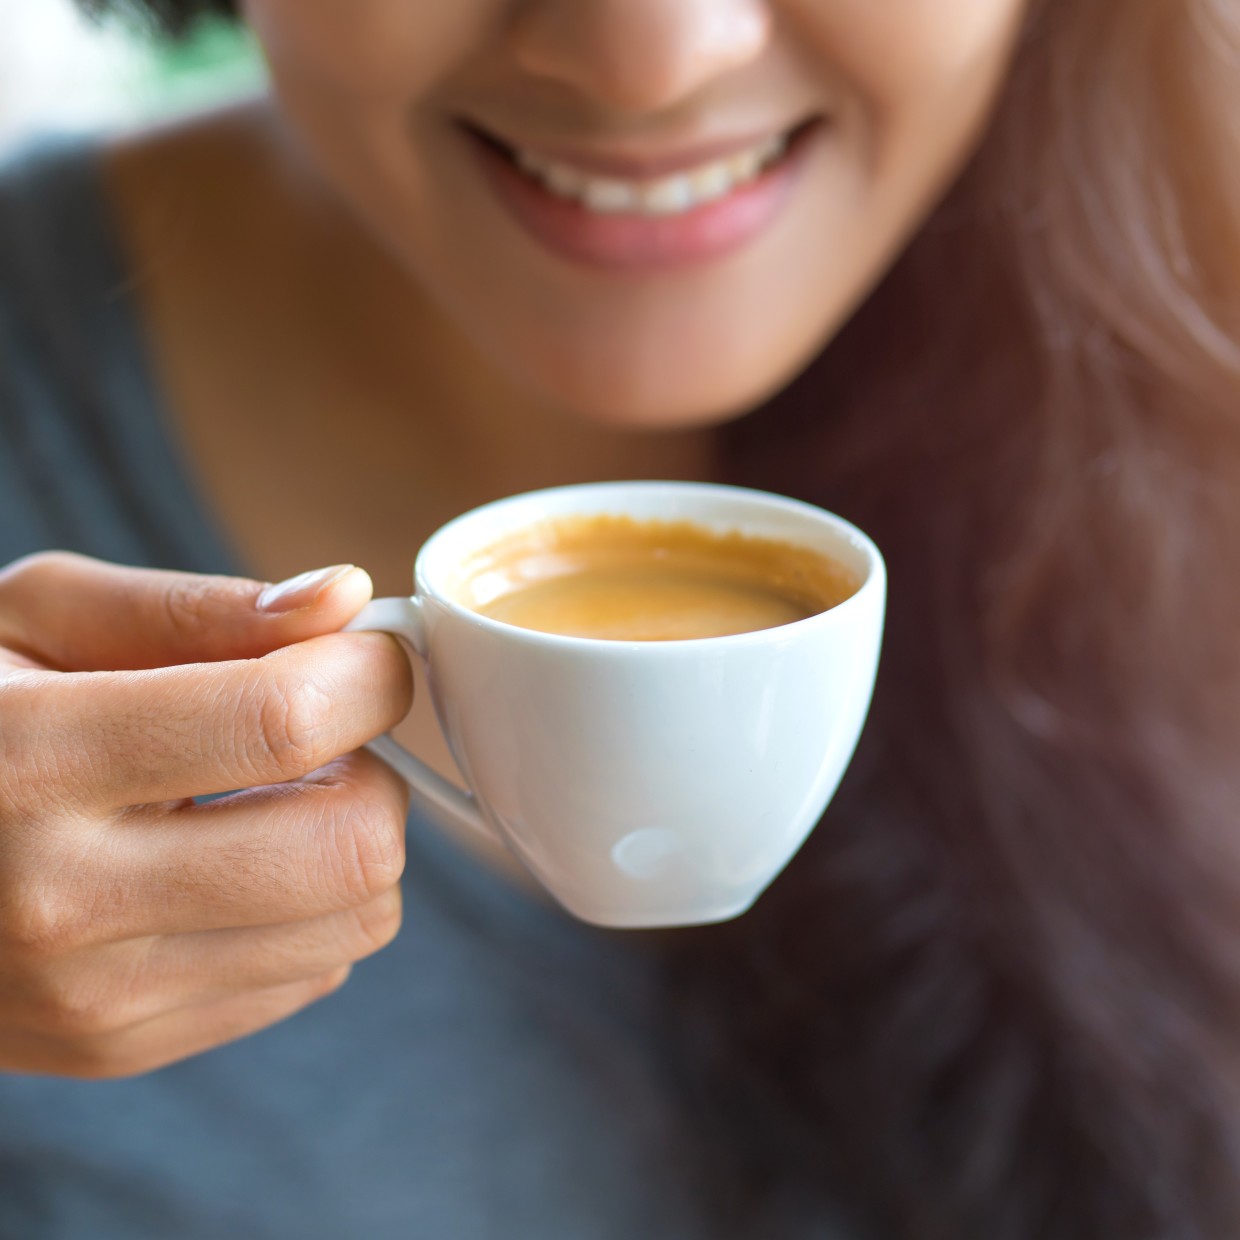  40代女性にとって「カフェイン」で得られるの3つの嬉しい効果とは 